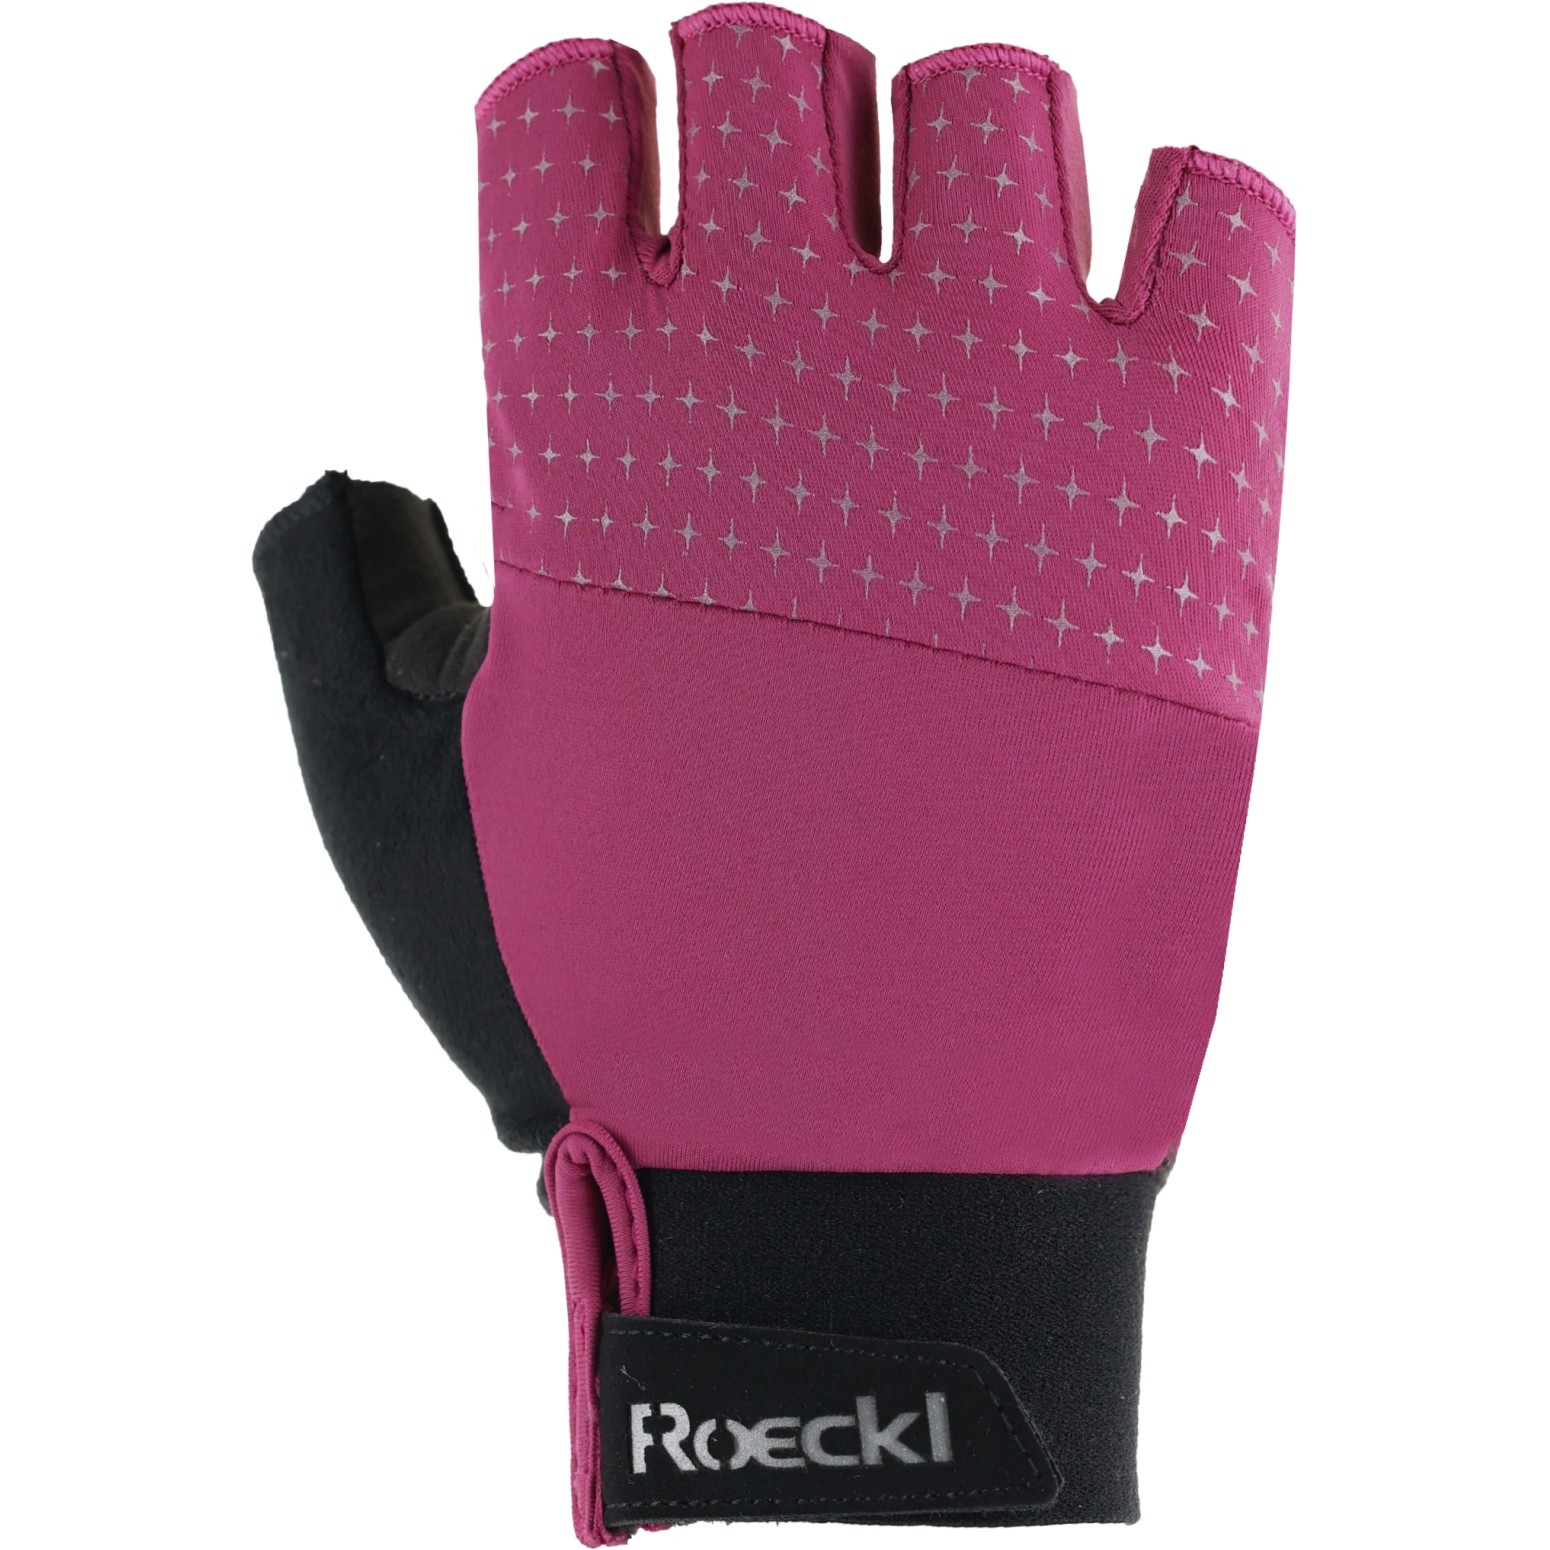 Bild von Roeckl Sports Diamante Fahrradhandschuhe Damen - posh pink 4350